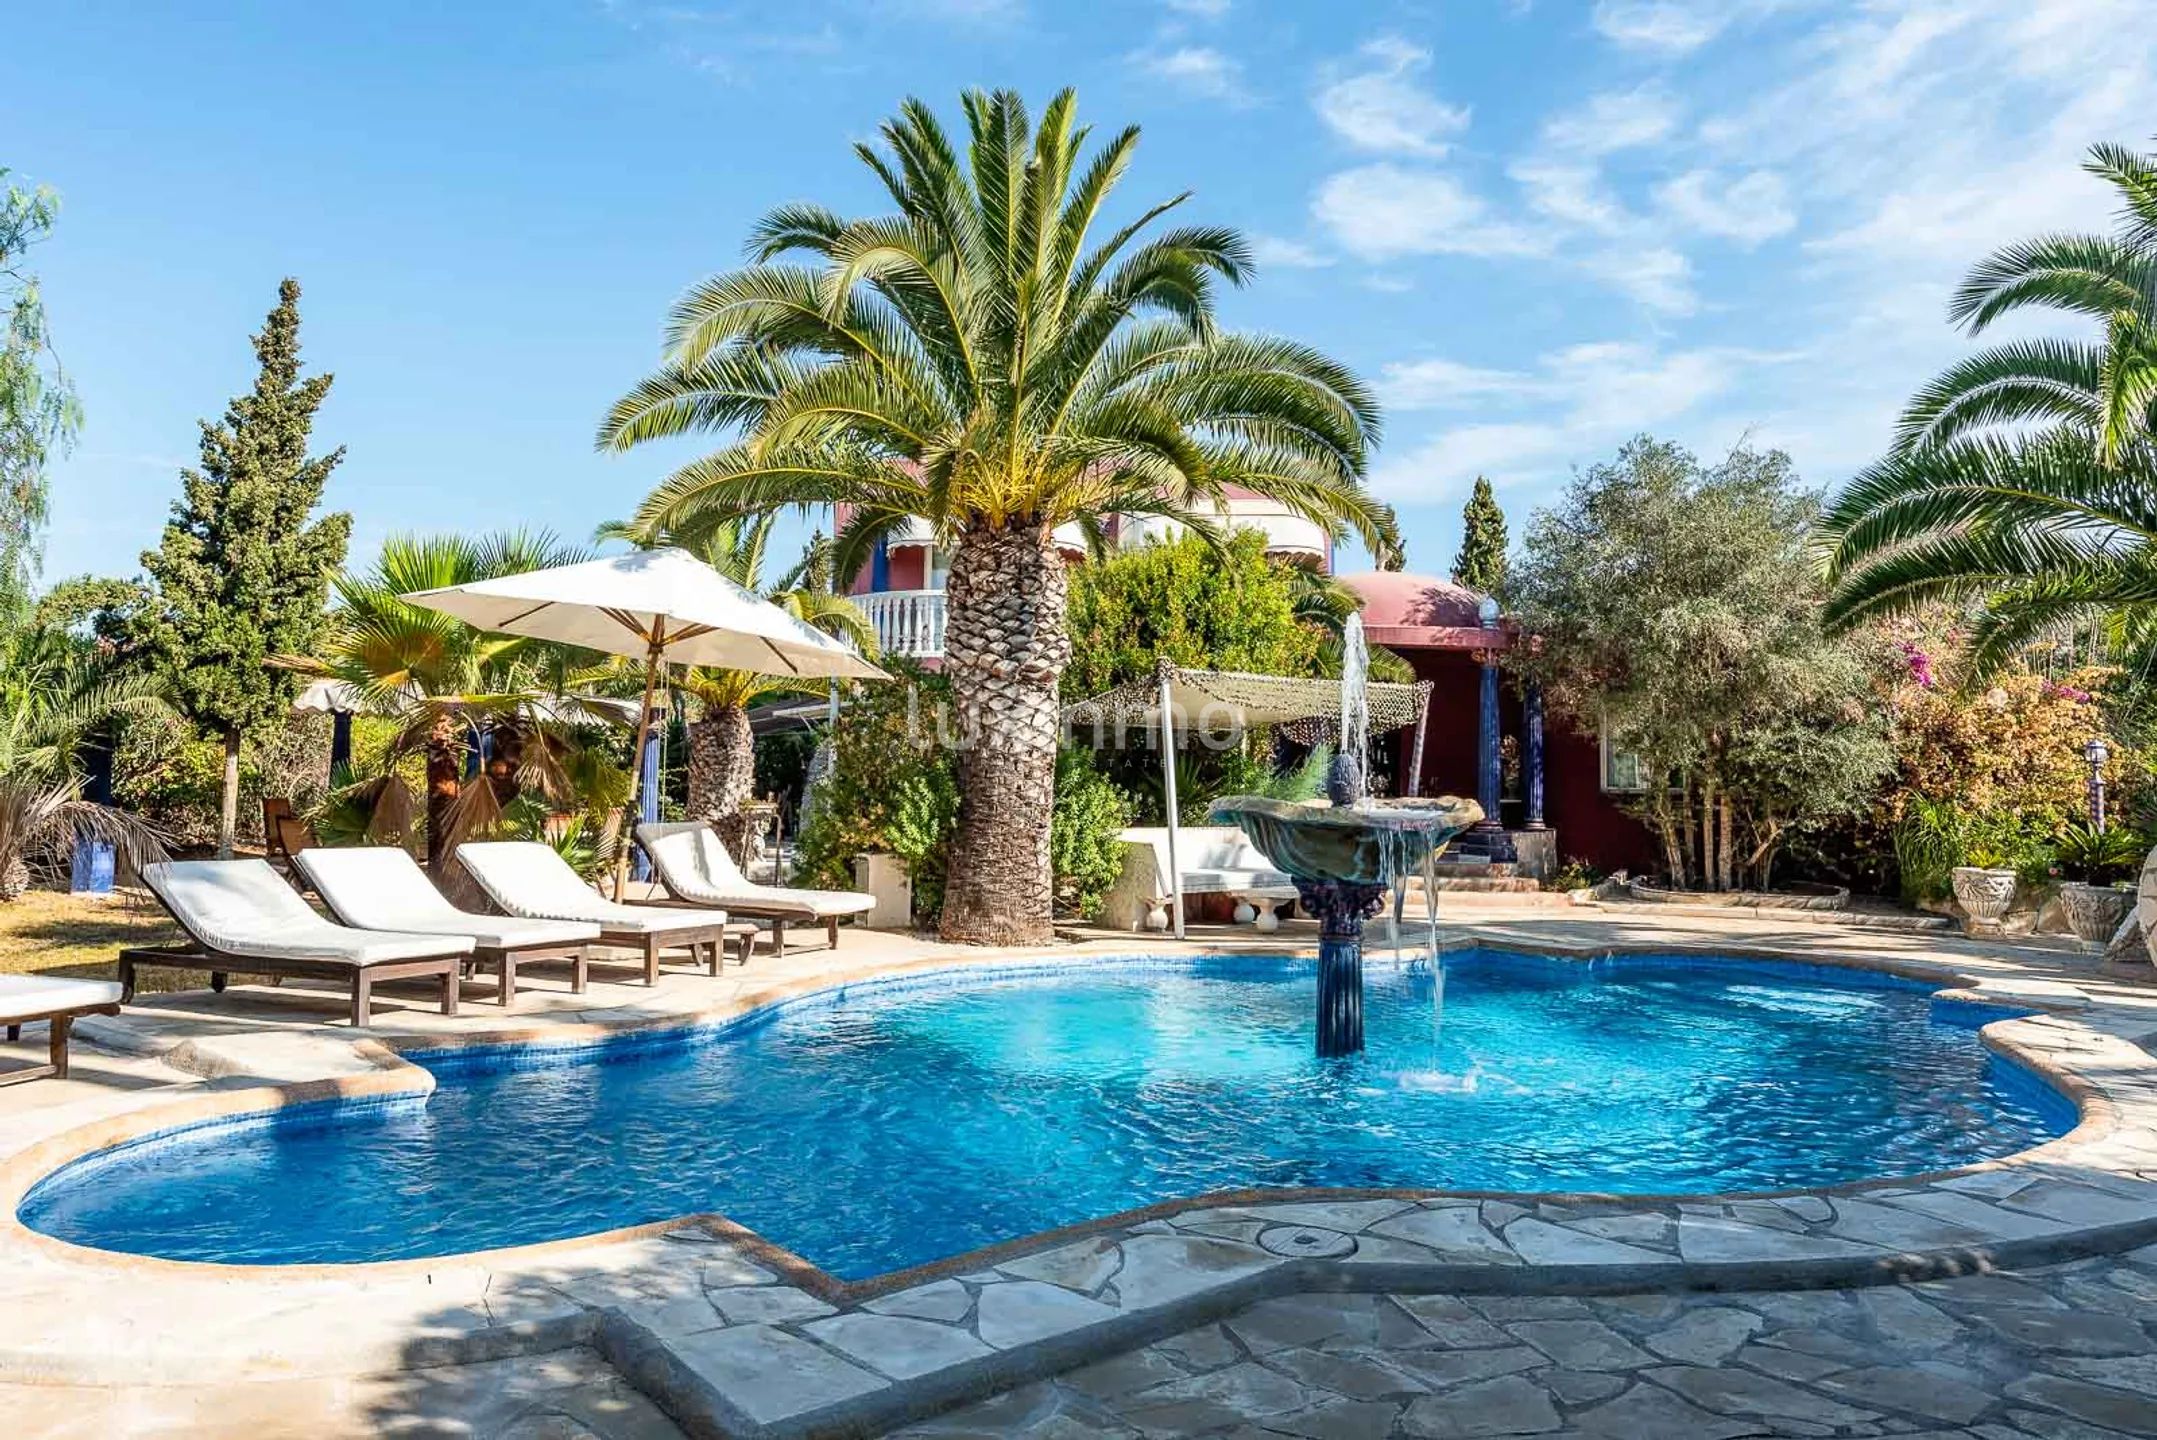 Villa Aladin: Autentisk arabiskt inspirerad villa med tropisk trädgård i Sant Jordi, Ibiza